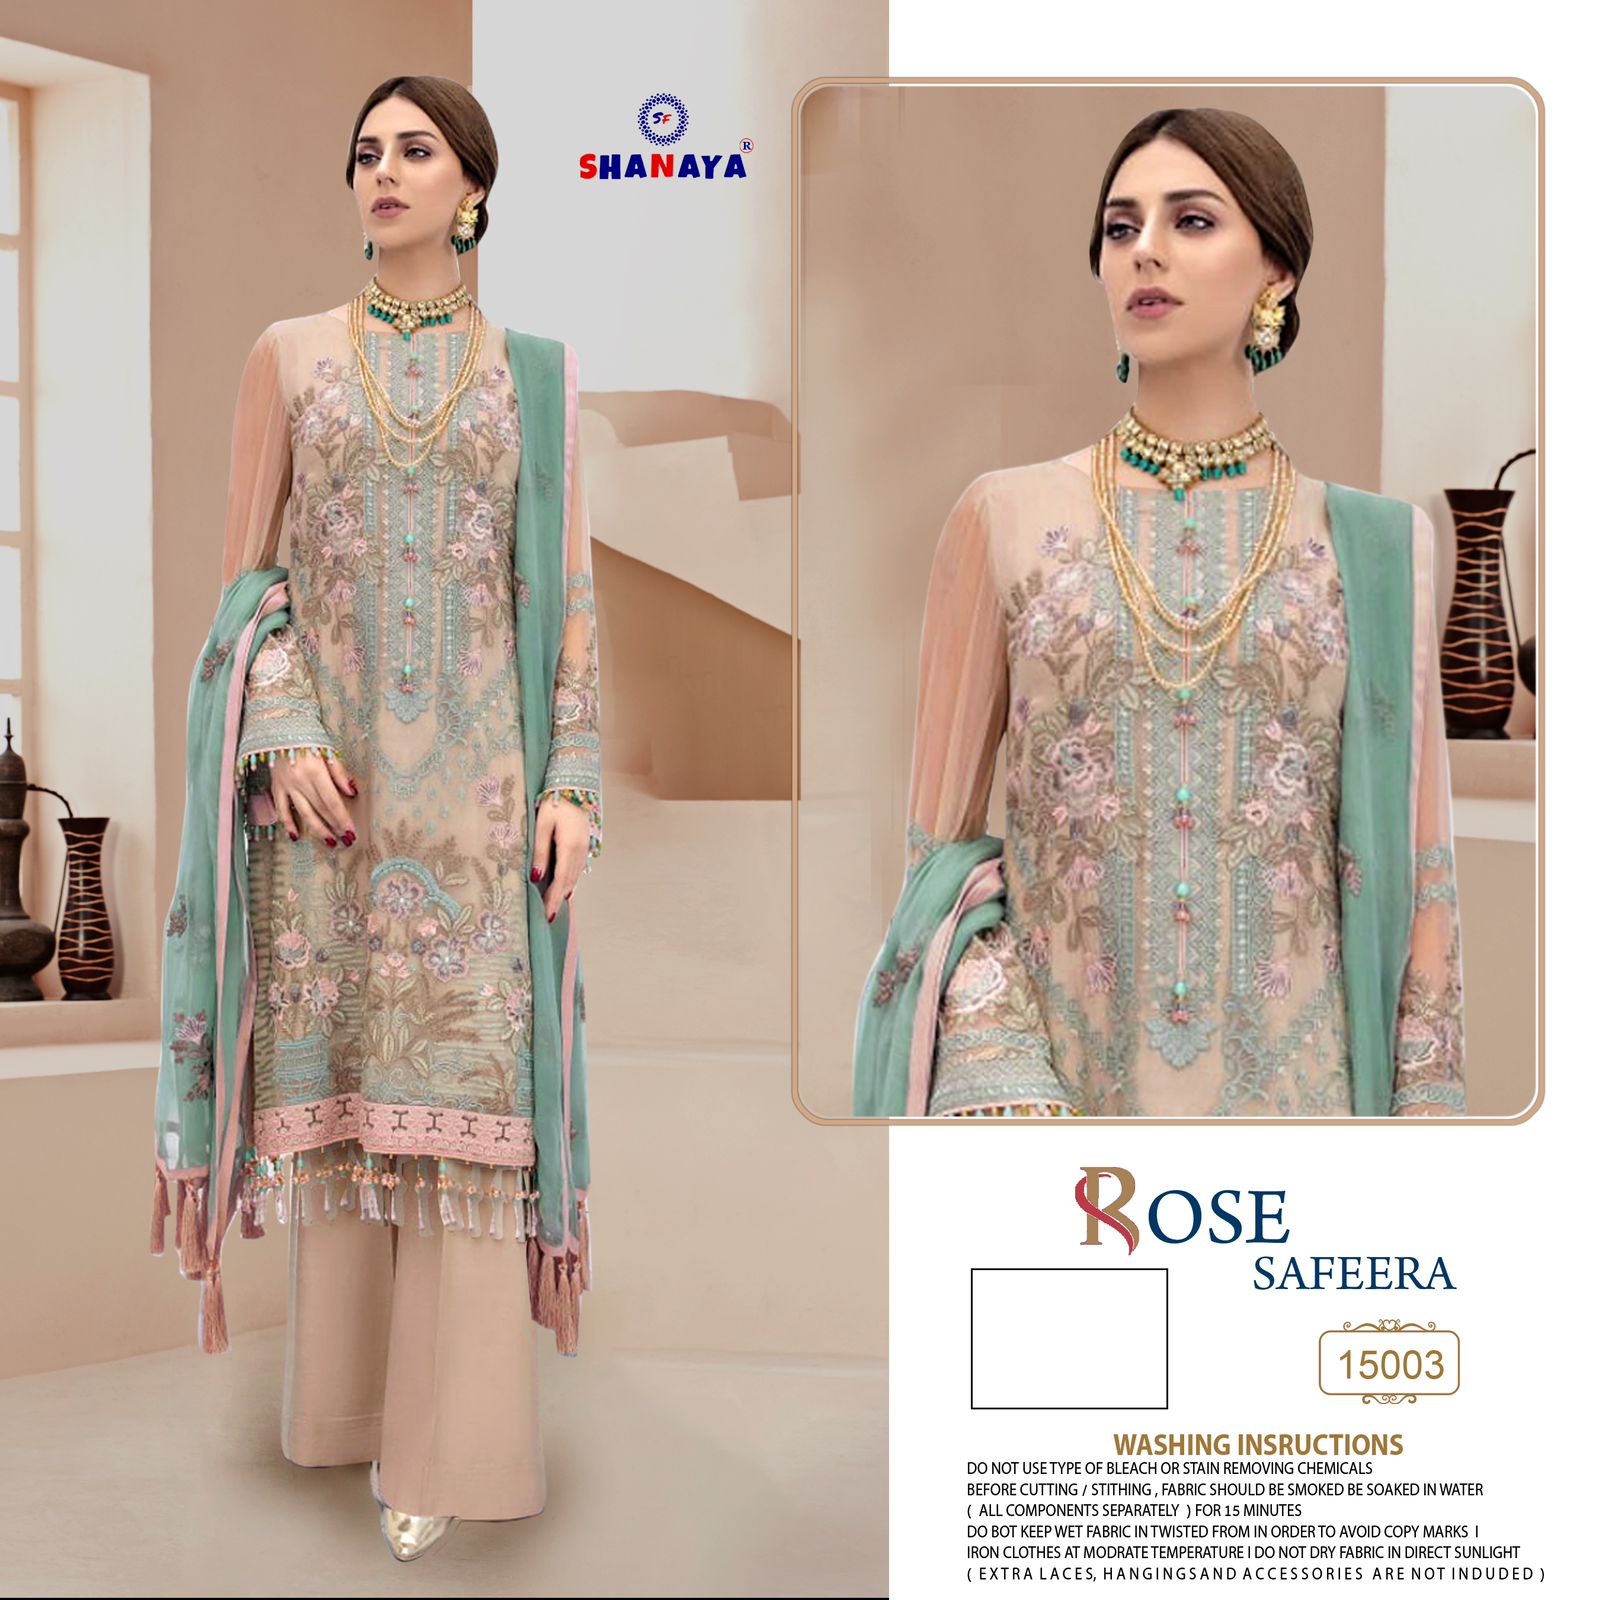 shanaya rose safeera nx georgette gorgeous look salwar suit catalog